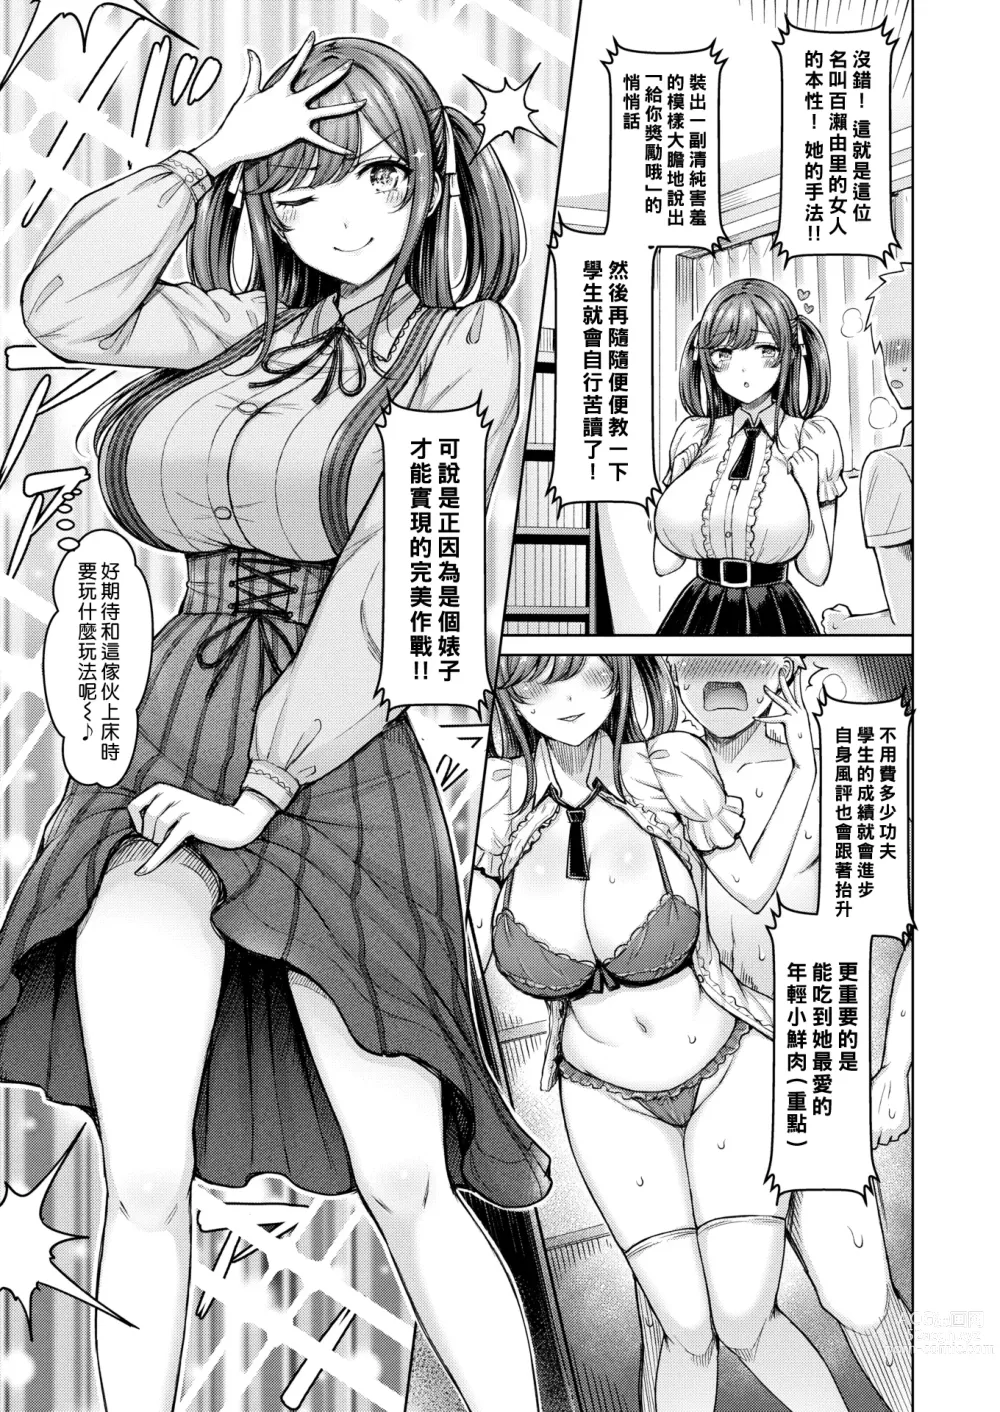 Page 3 of manga 一切都是託百瀨老師的福!